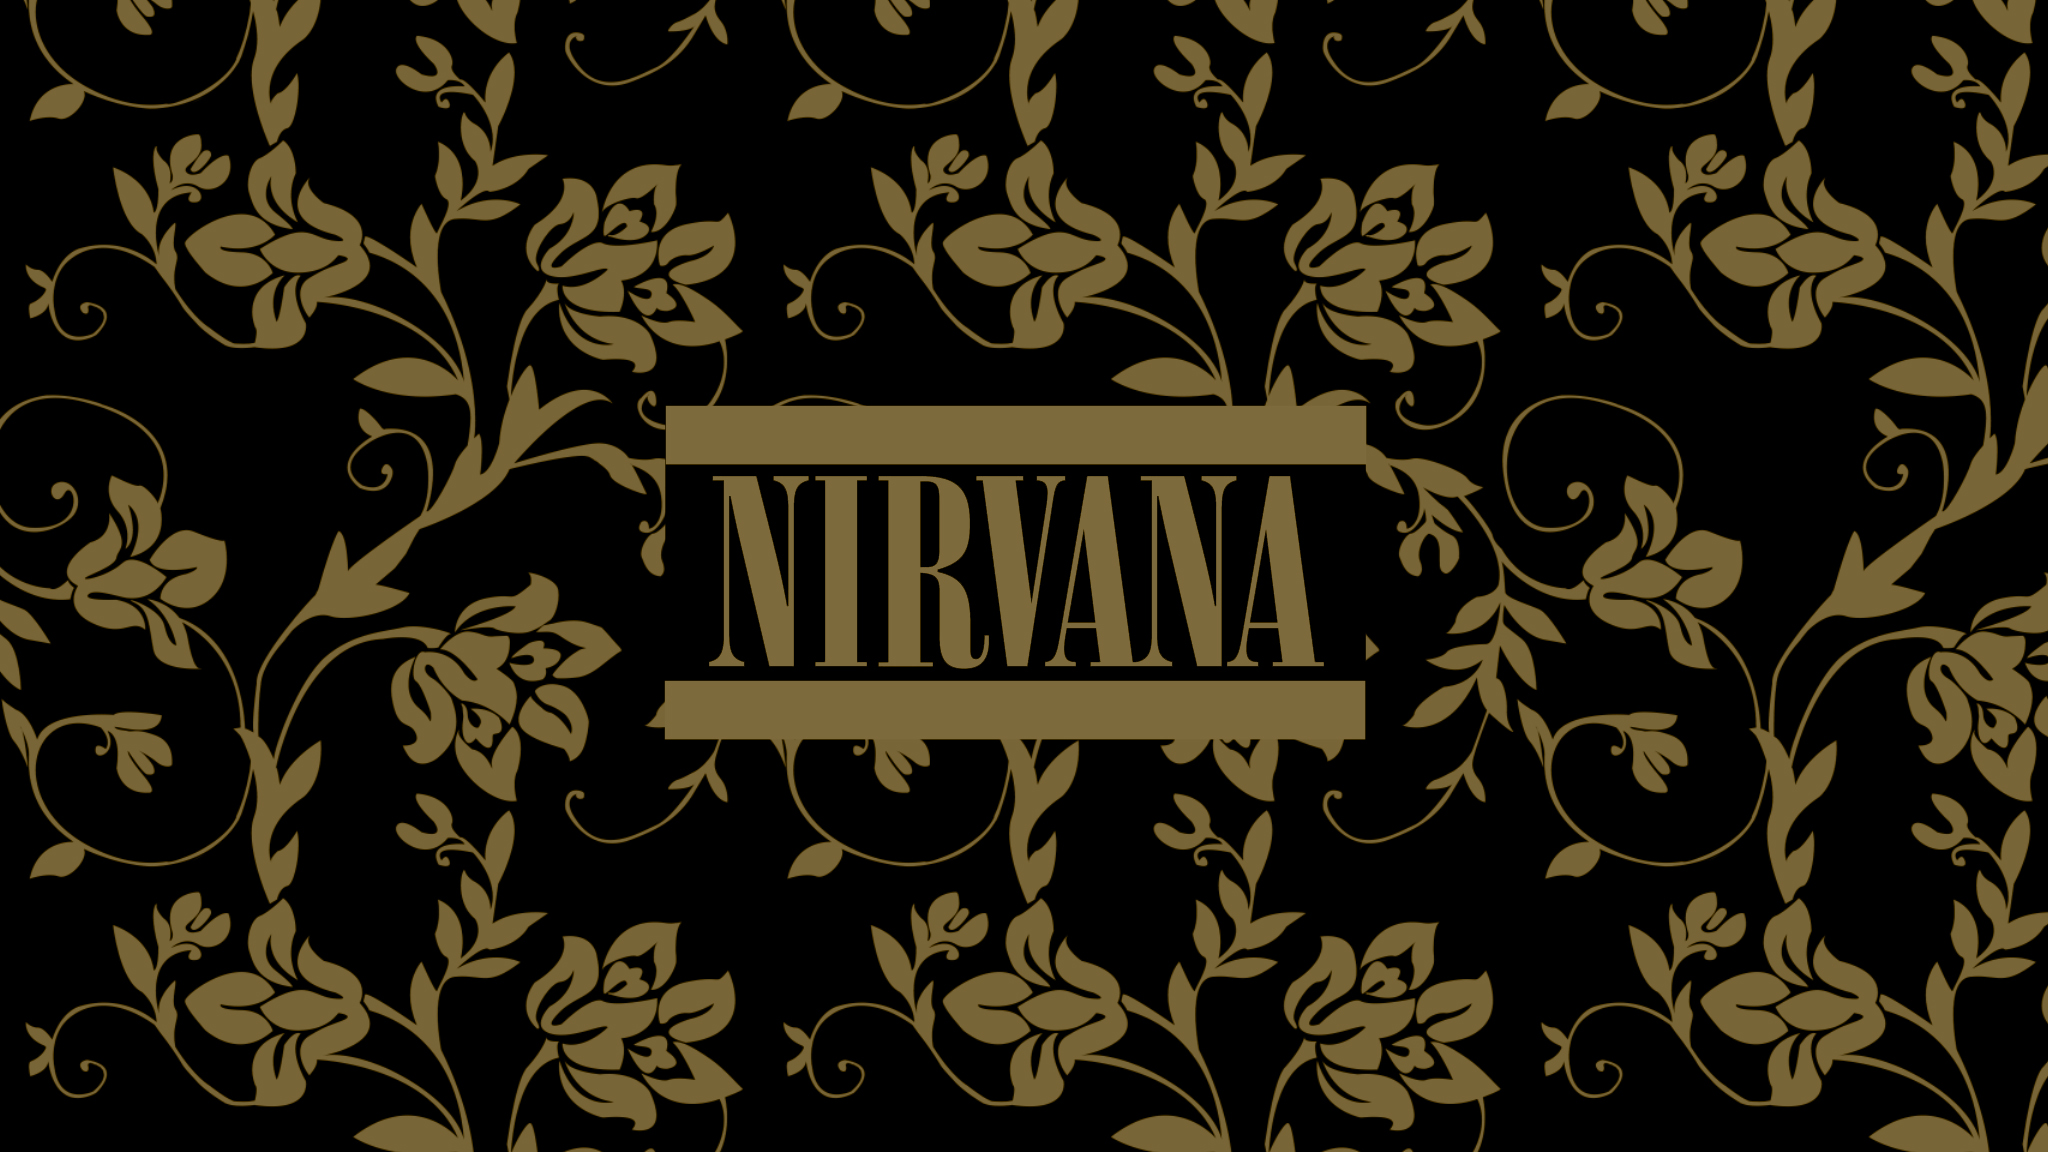 Nirvana Band For Desktop Wallpaper WallpaperLepi